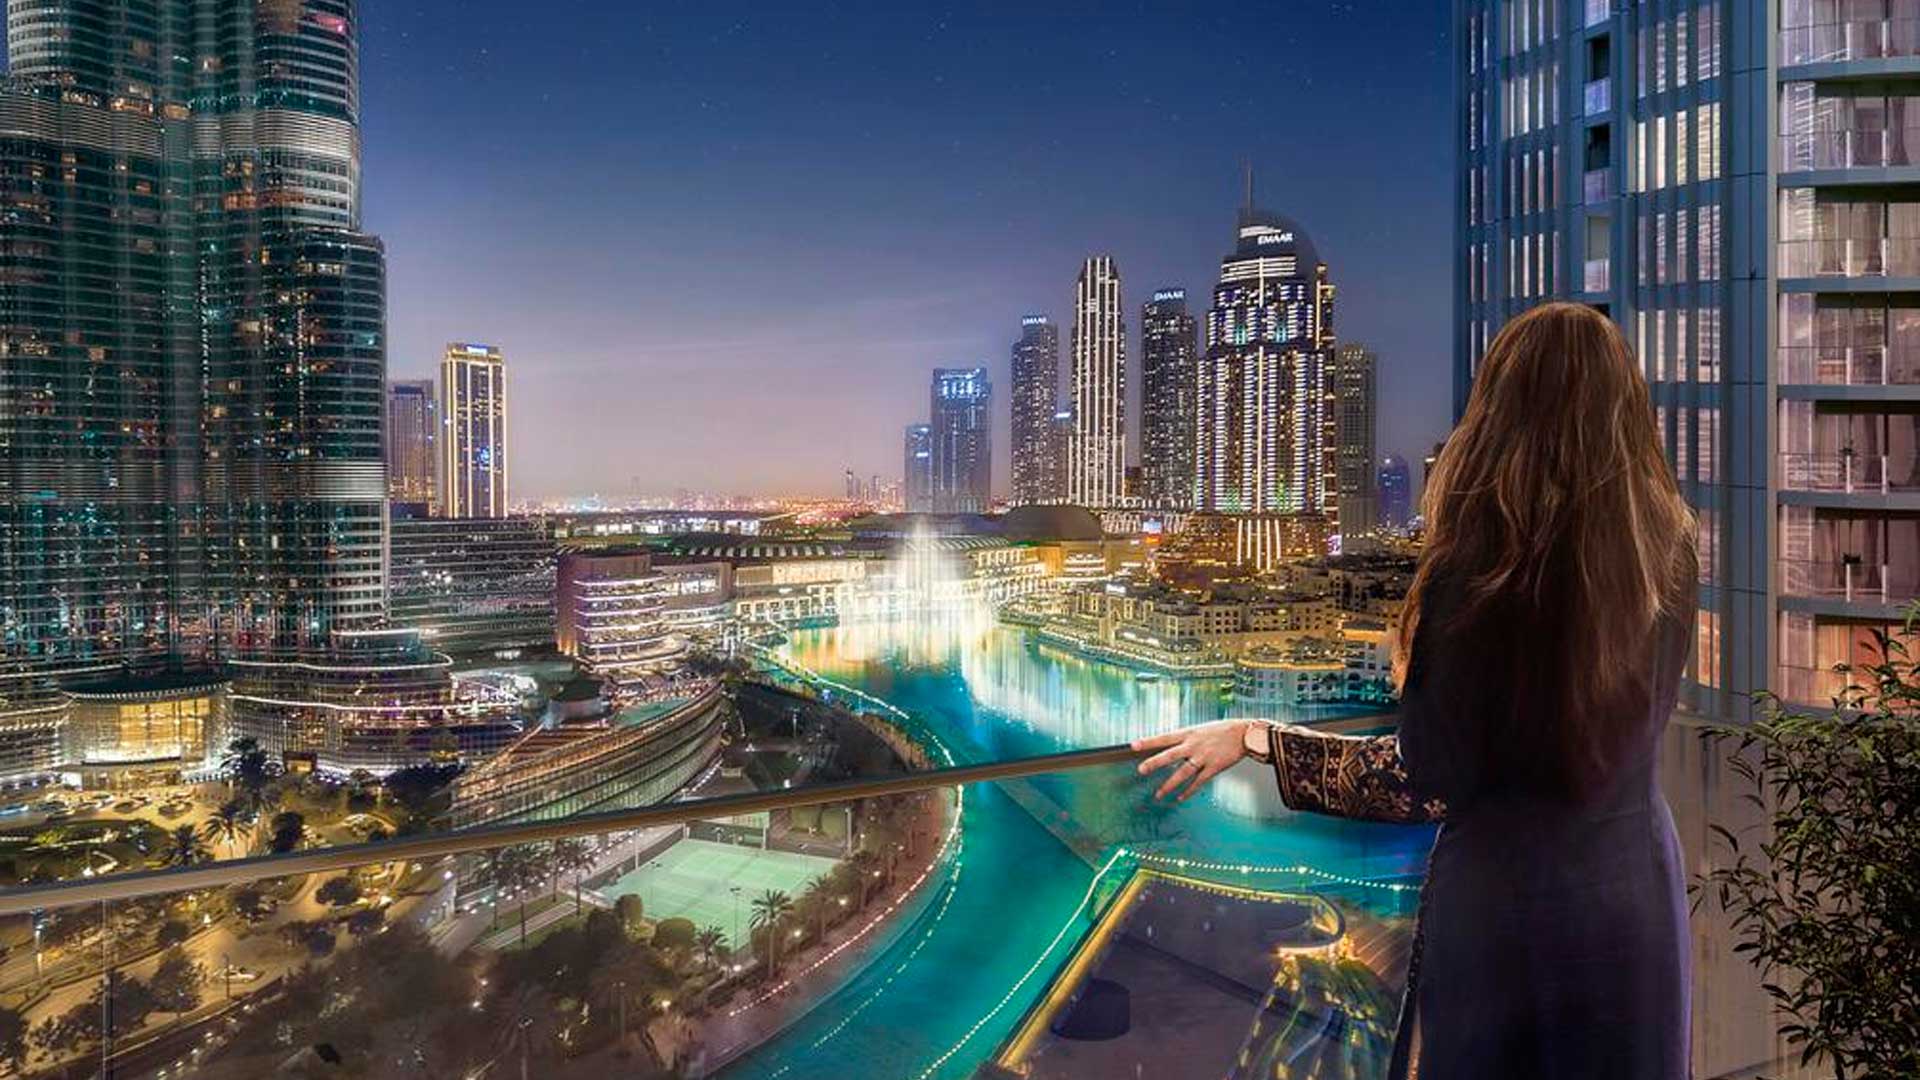 ST.REGIS RESIDENCES by Emaar Properties in Downtown Dubai, Dubai, UAE3